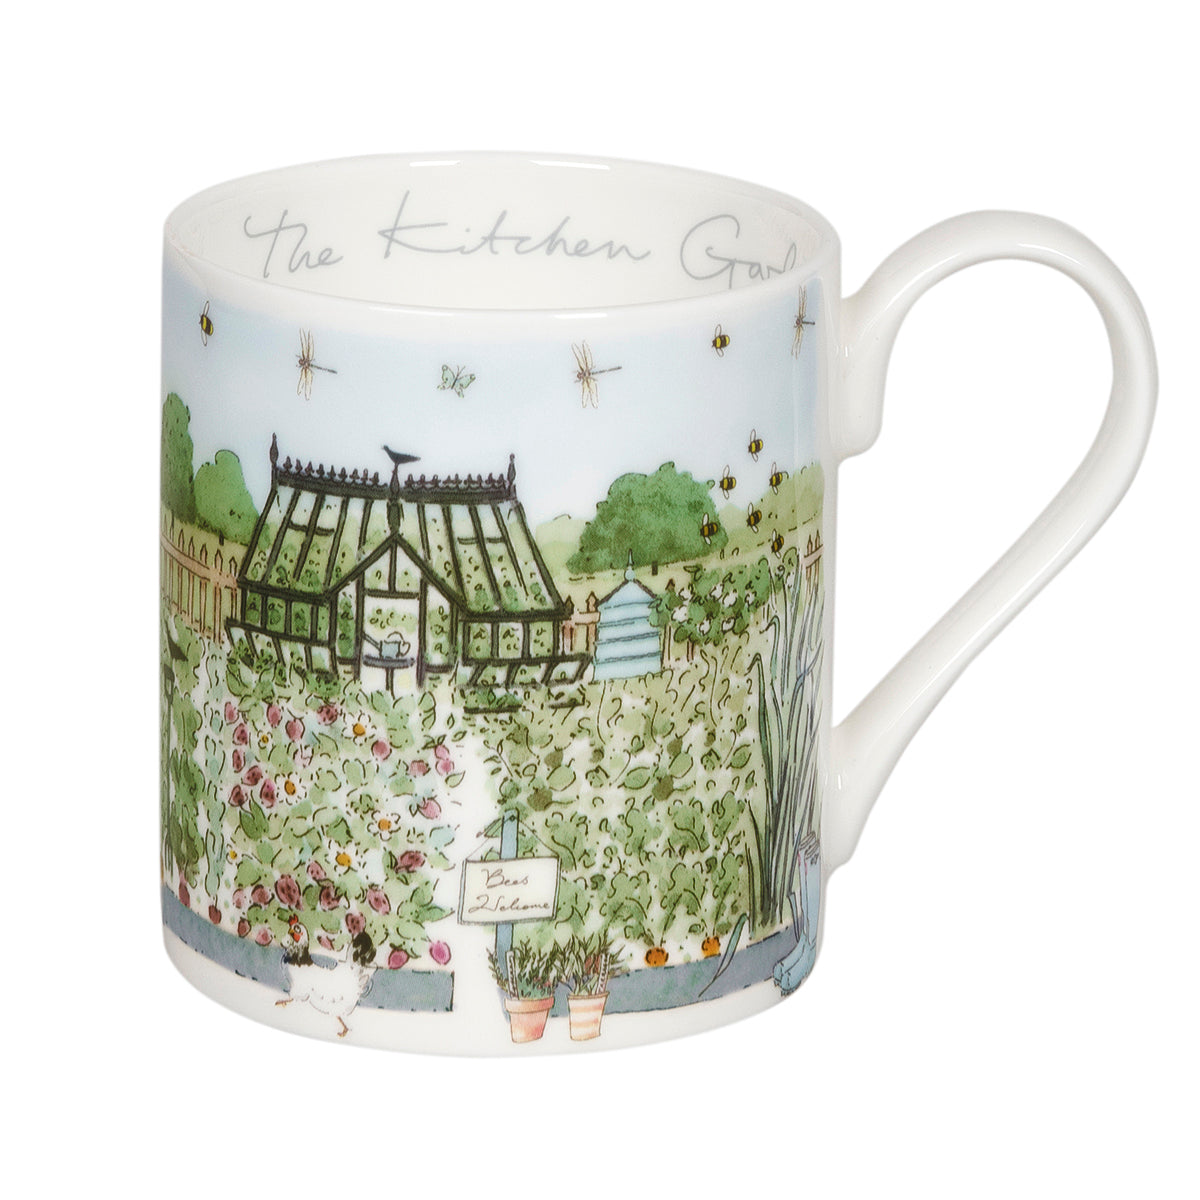 The Kitchen Garden Mug by Sophie Allport